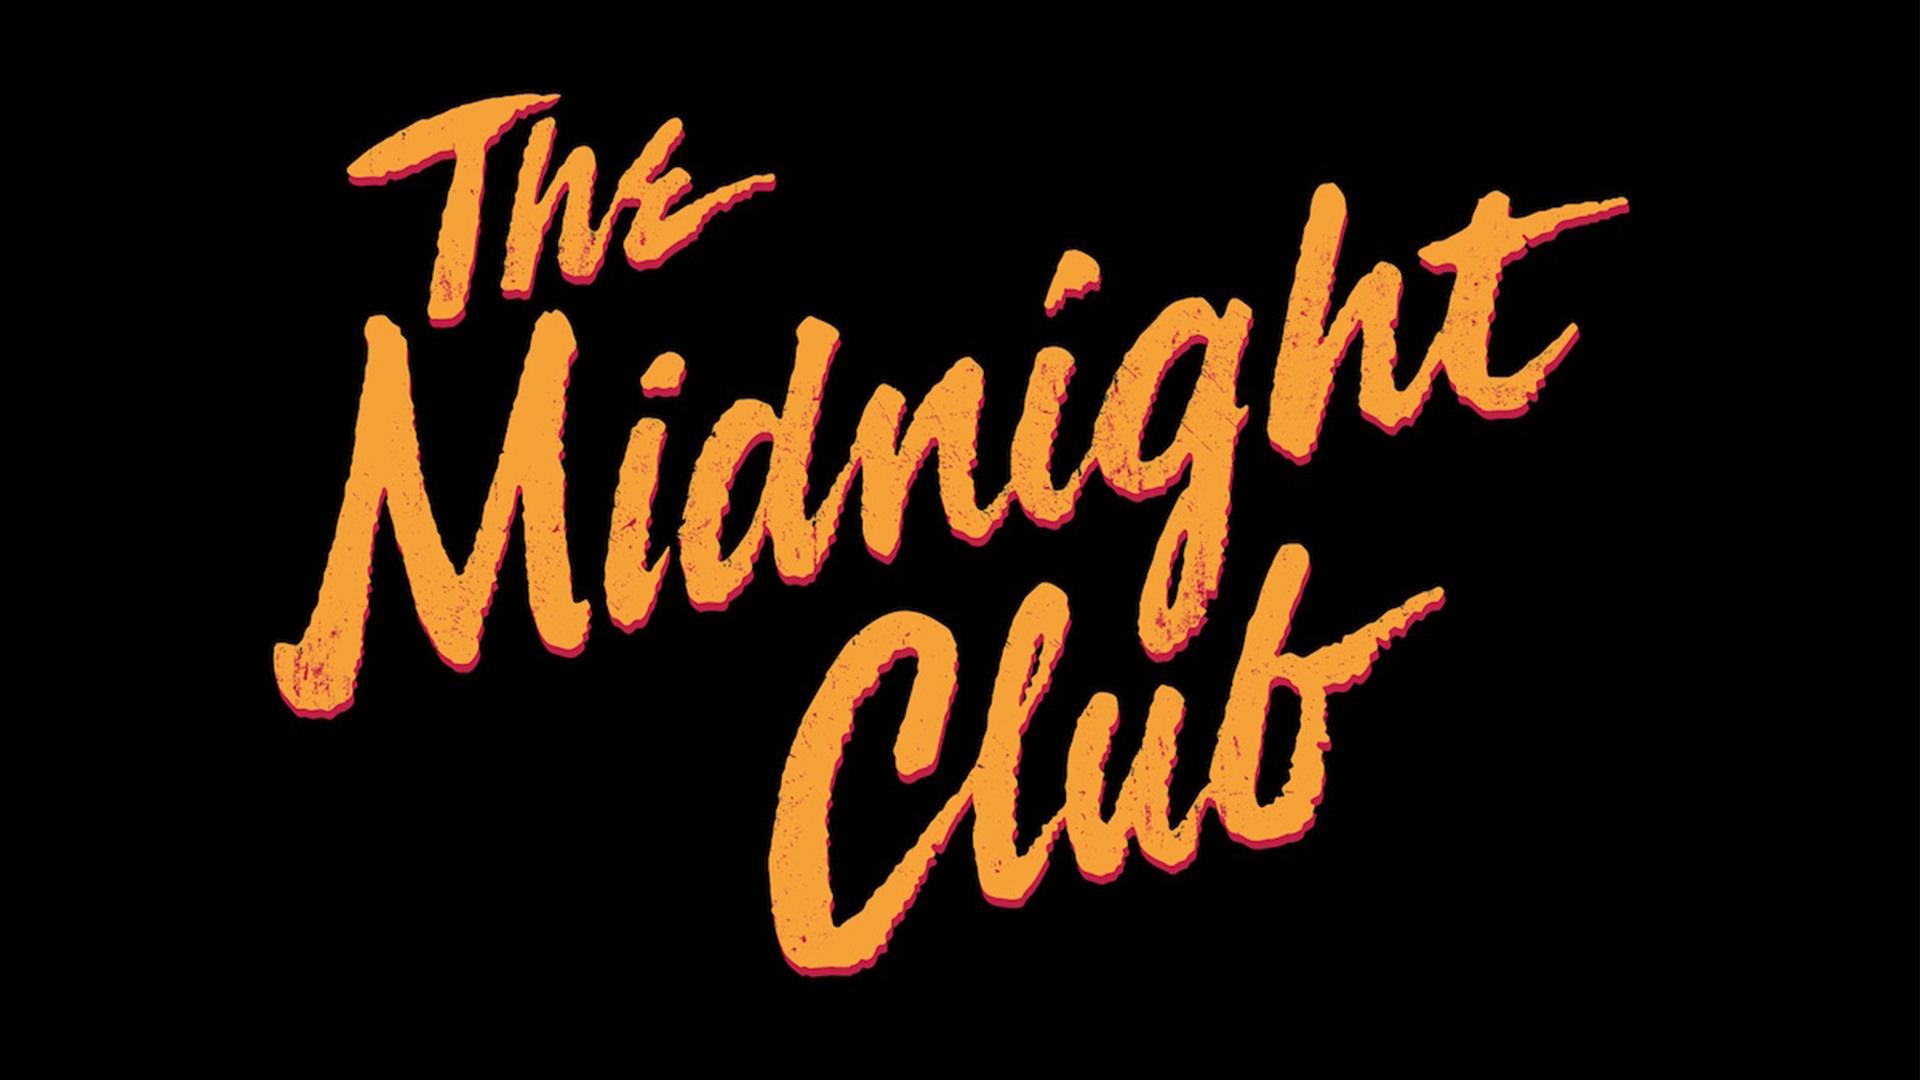 پخش تریلر ترسناک سریال The Midnight Club مایک فلنگن